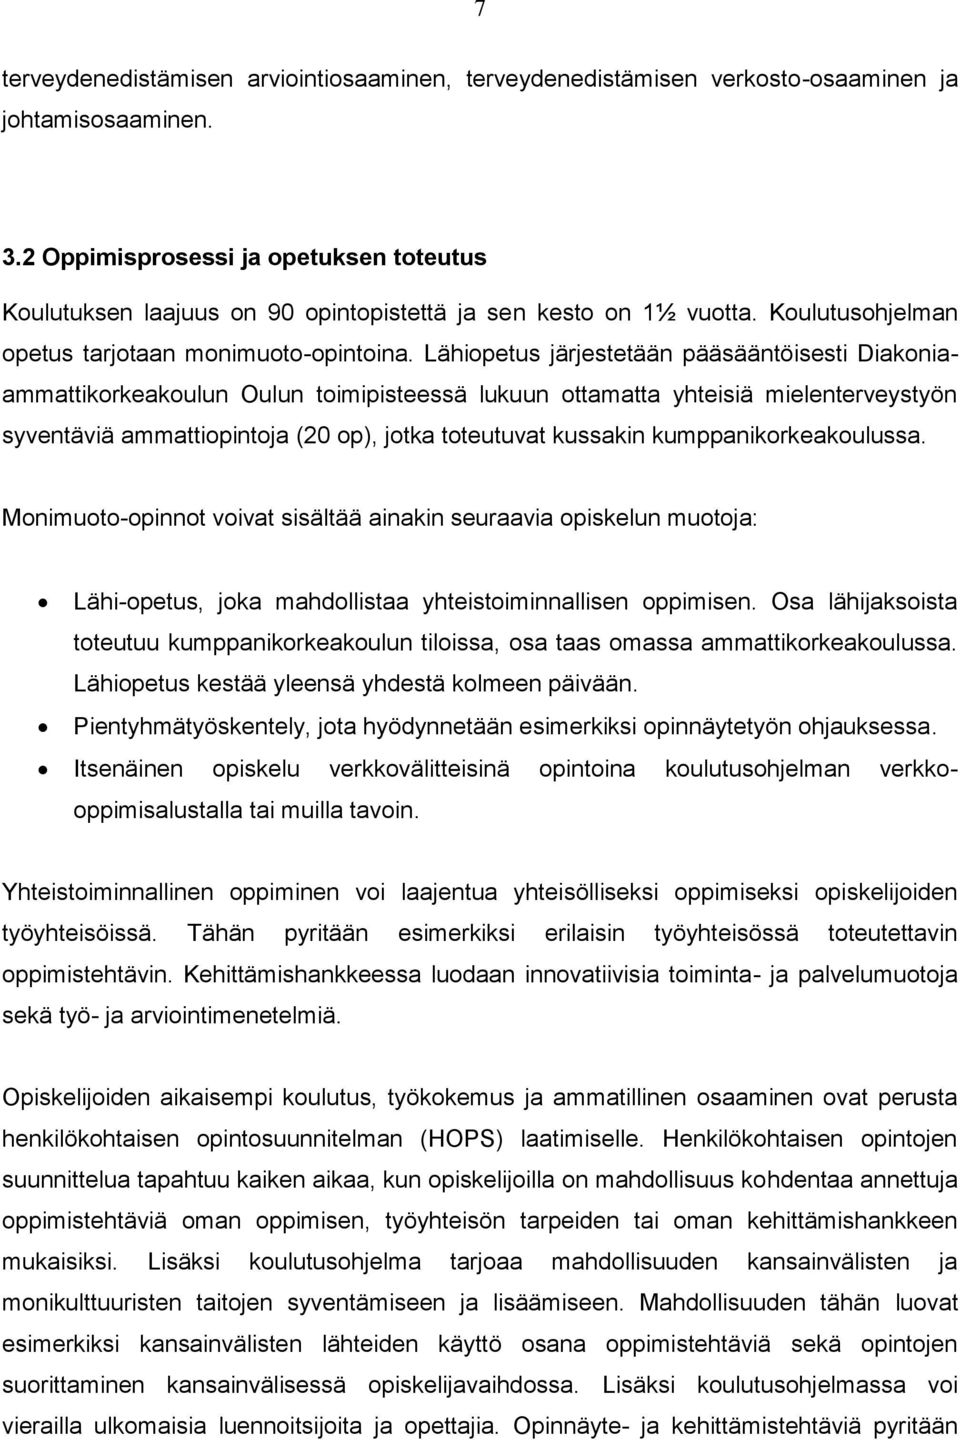 Lähiopetus järjestetään pääsääntöisesti Diakoniaammattikorkeakoulun Oulun toimipisteessä lukuun ottamatta yhteisiä mielenterveystyön syventäviä ammattiopintoja (20 op), jotka toteutuvat kussakin